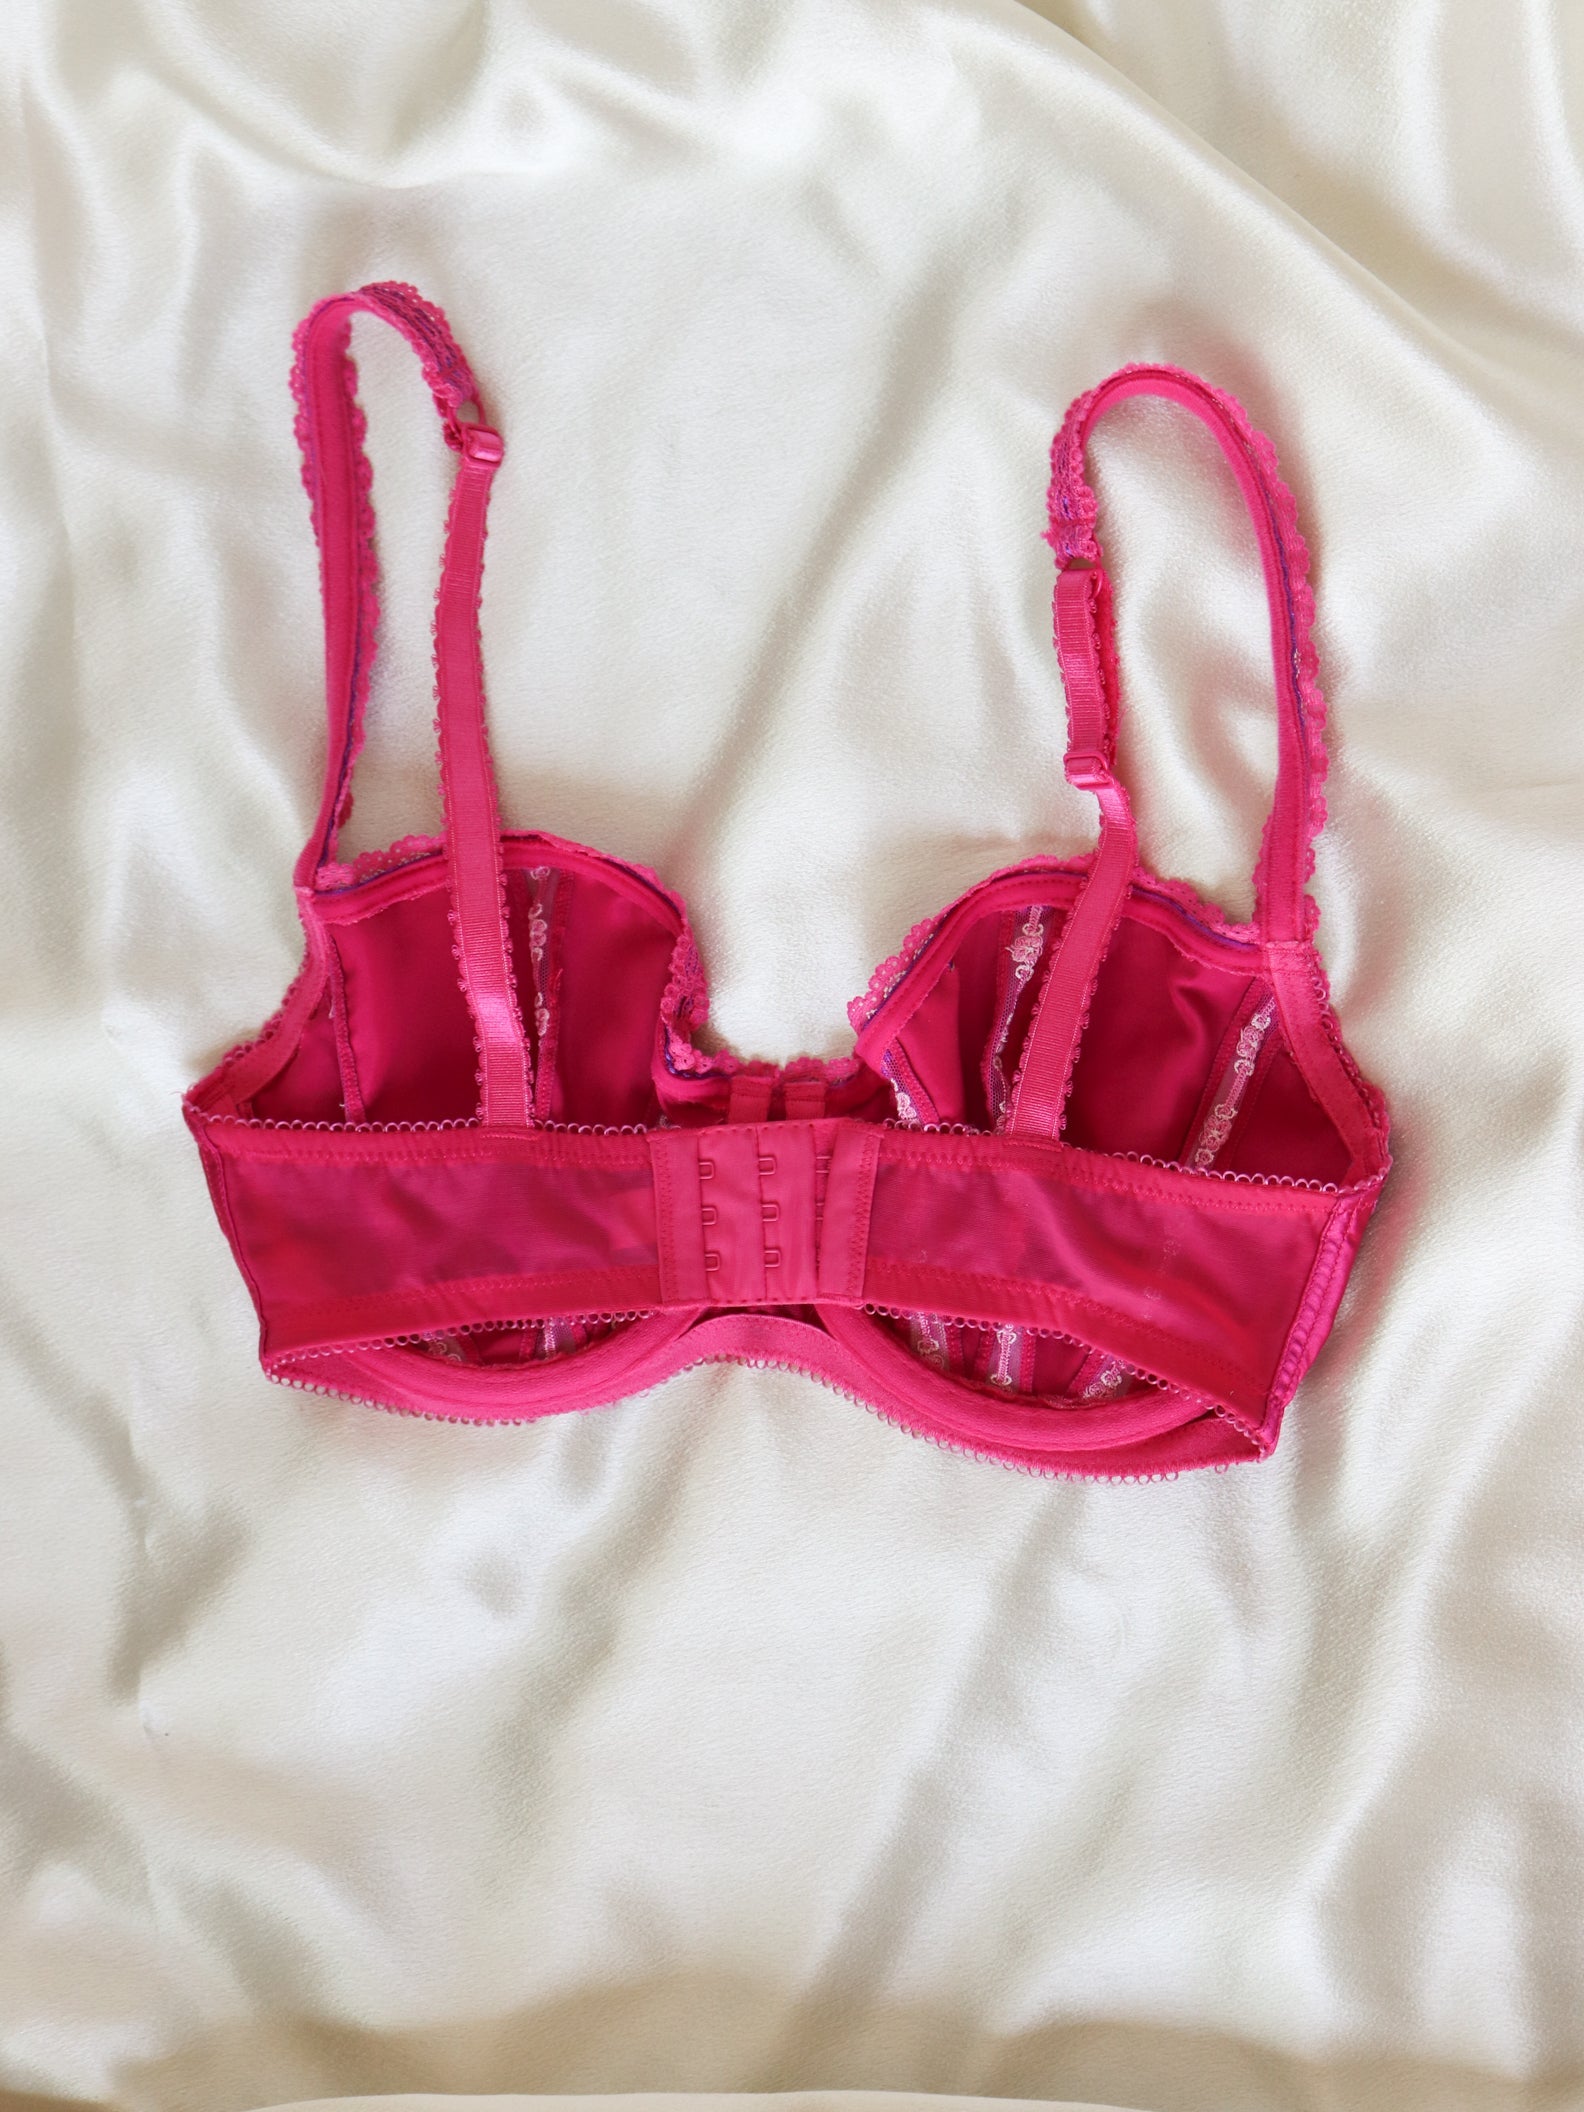 Red 36D Victoria Secret bra